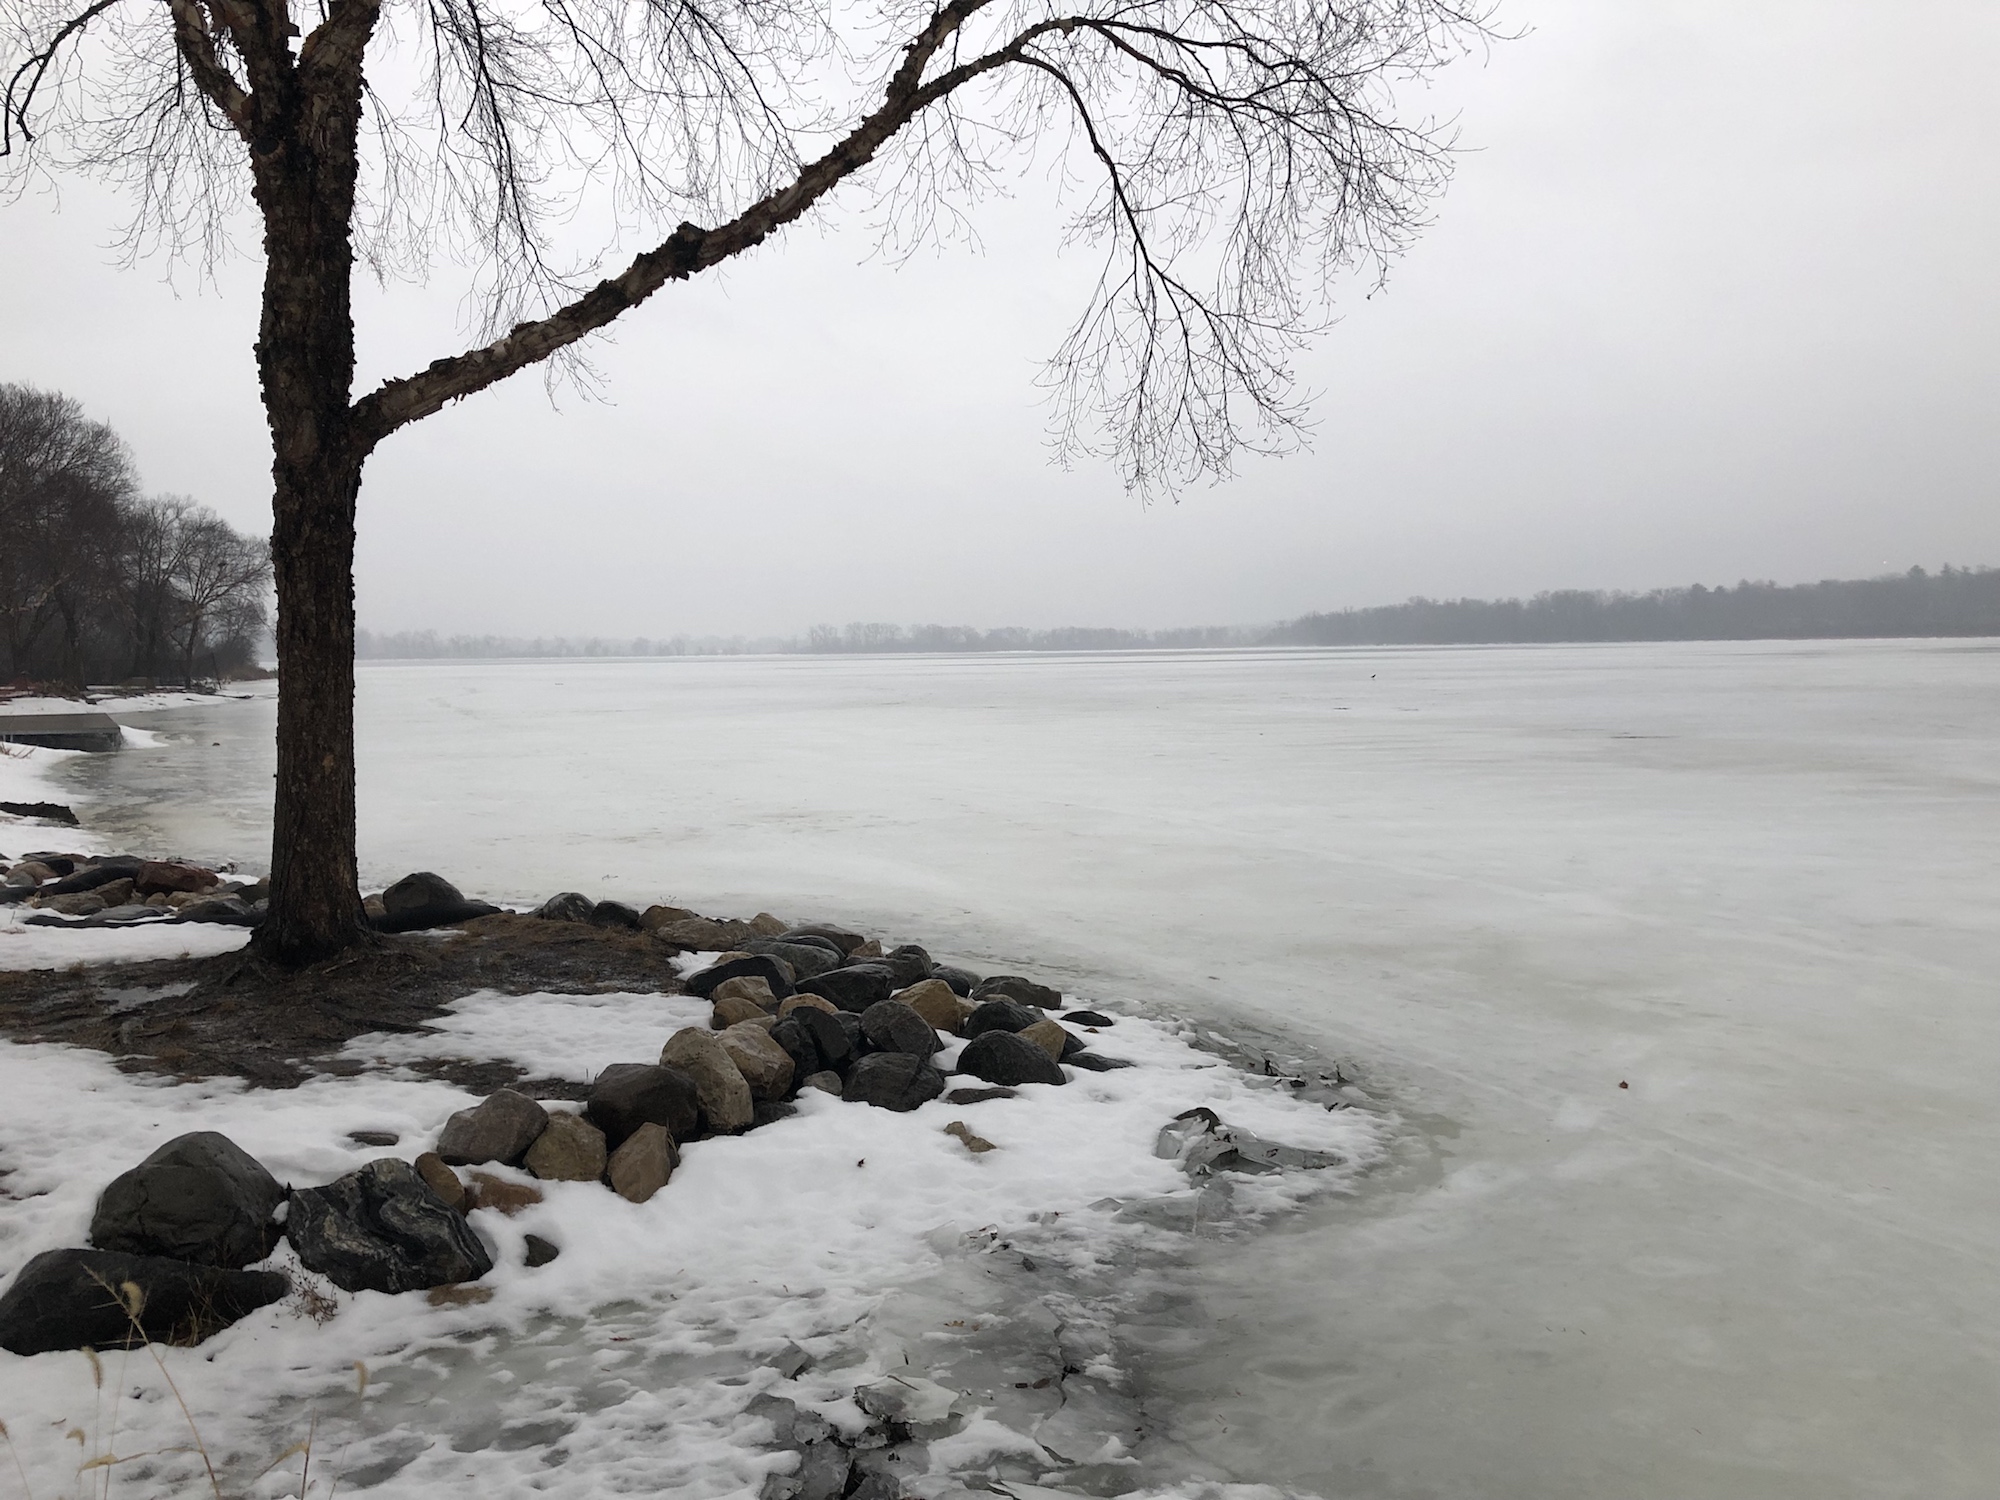 Lake Wingra on February 4, 2019.